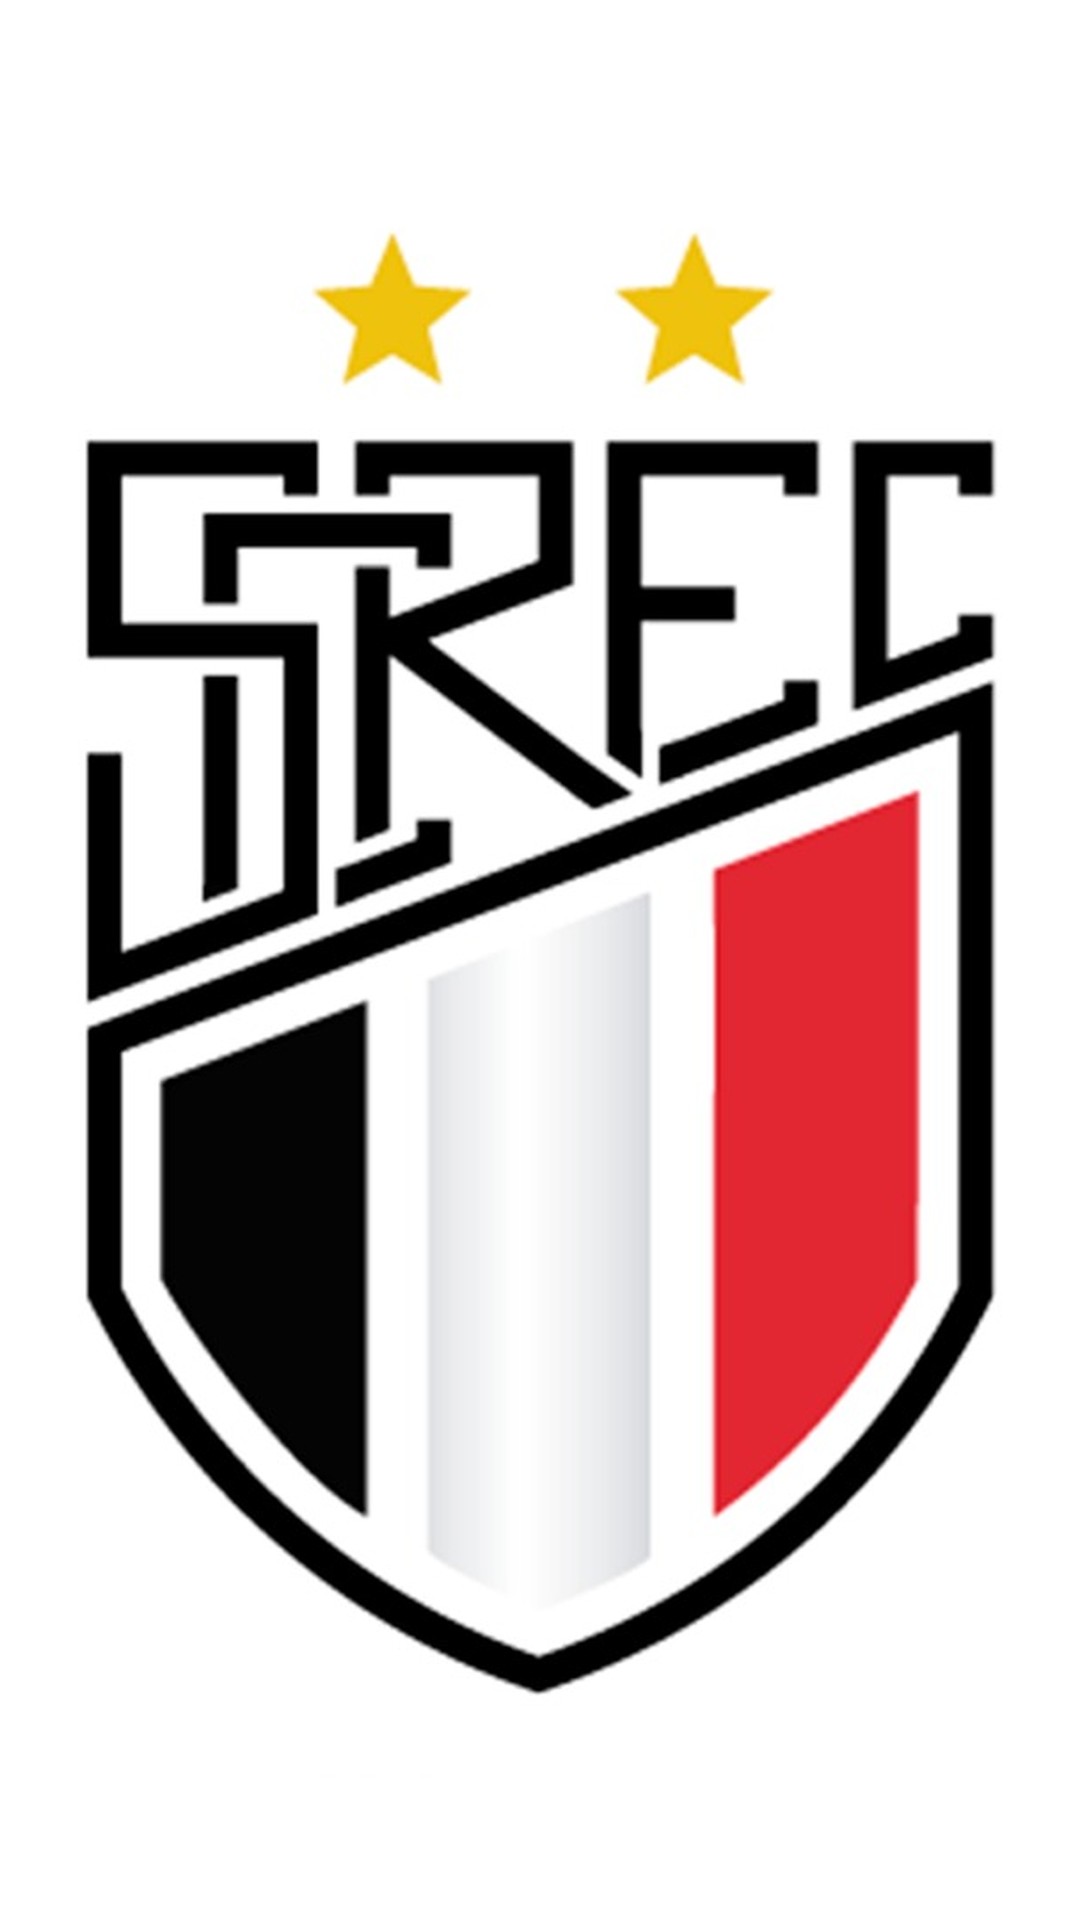 Santa Cruz Acre Esporte Clube - Site Oficial